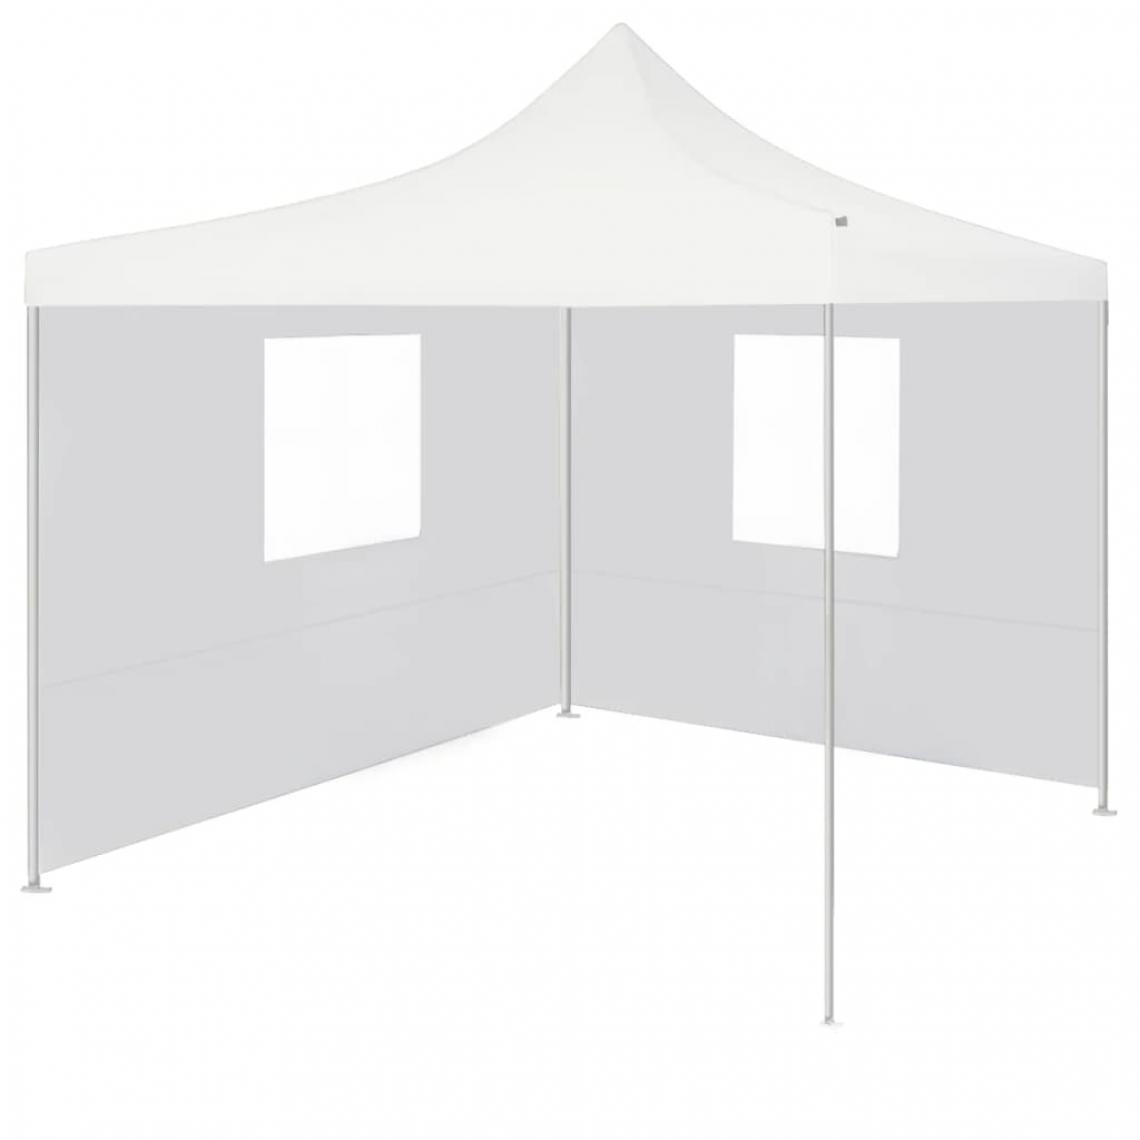 Icaverne - Inedit Structures extérieures categorie Port Moresby Tente de réception pliable avec 2 parois 2x2 m Acier Blanc - Marquise, auvent